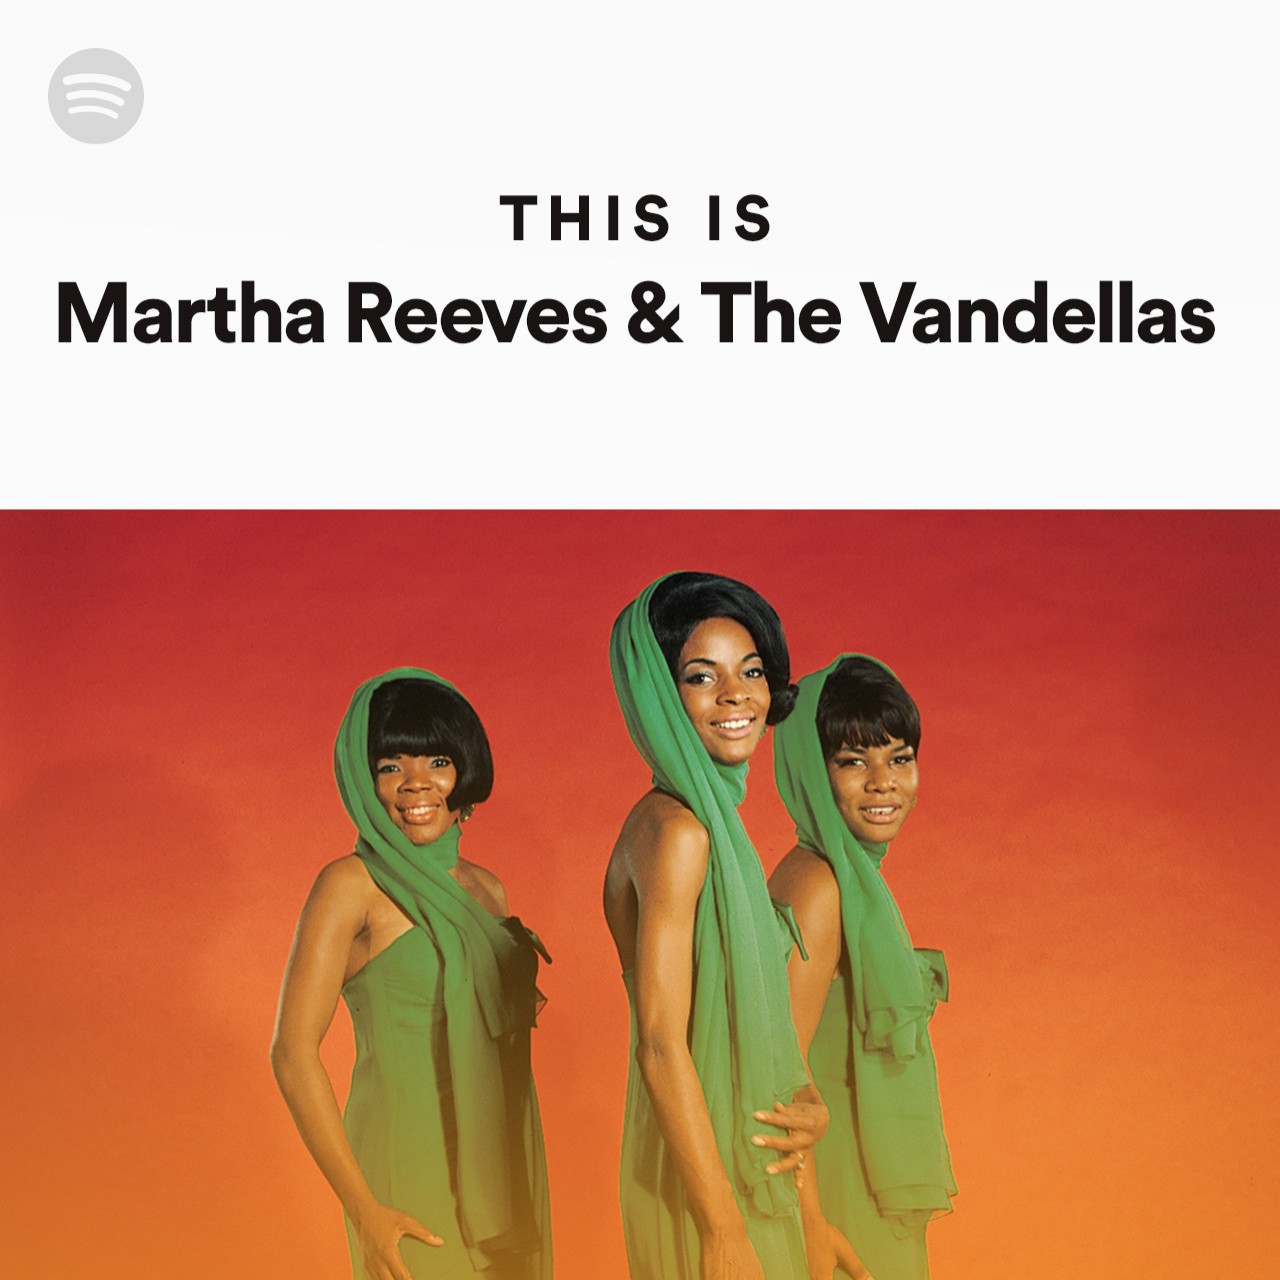 This Is Martha Reeves & The Vandellas